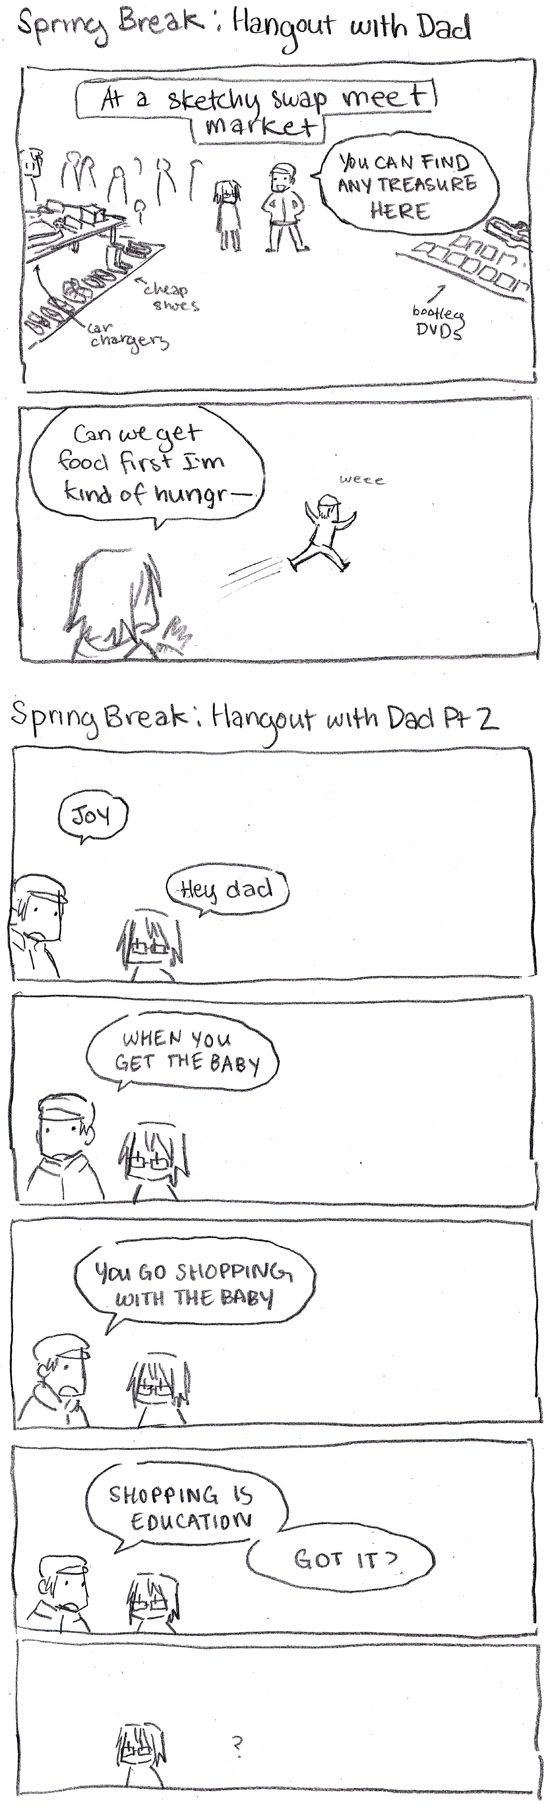 Spring Break Comics: Hangout with Dad